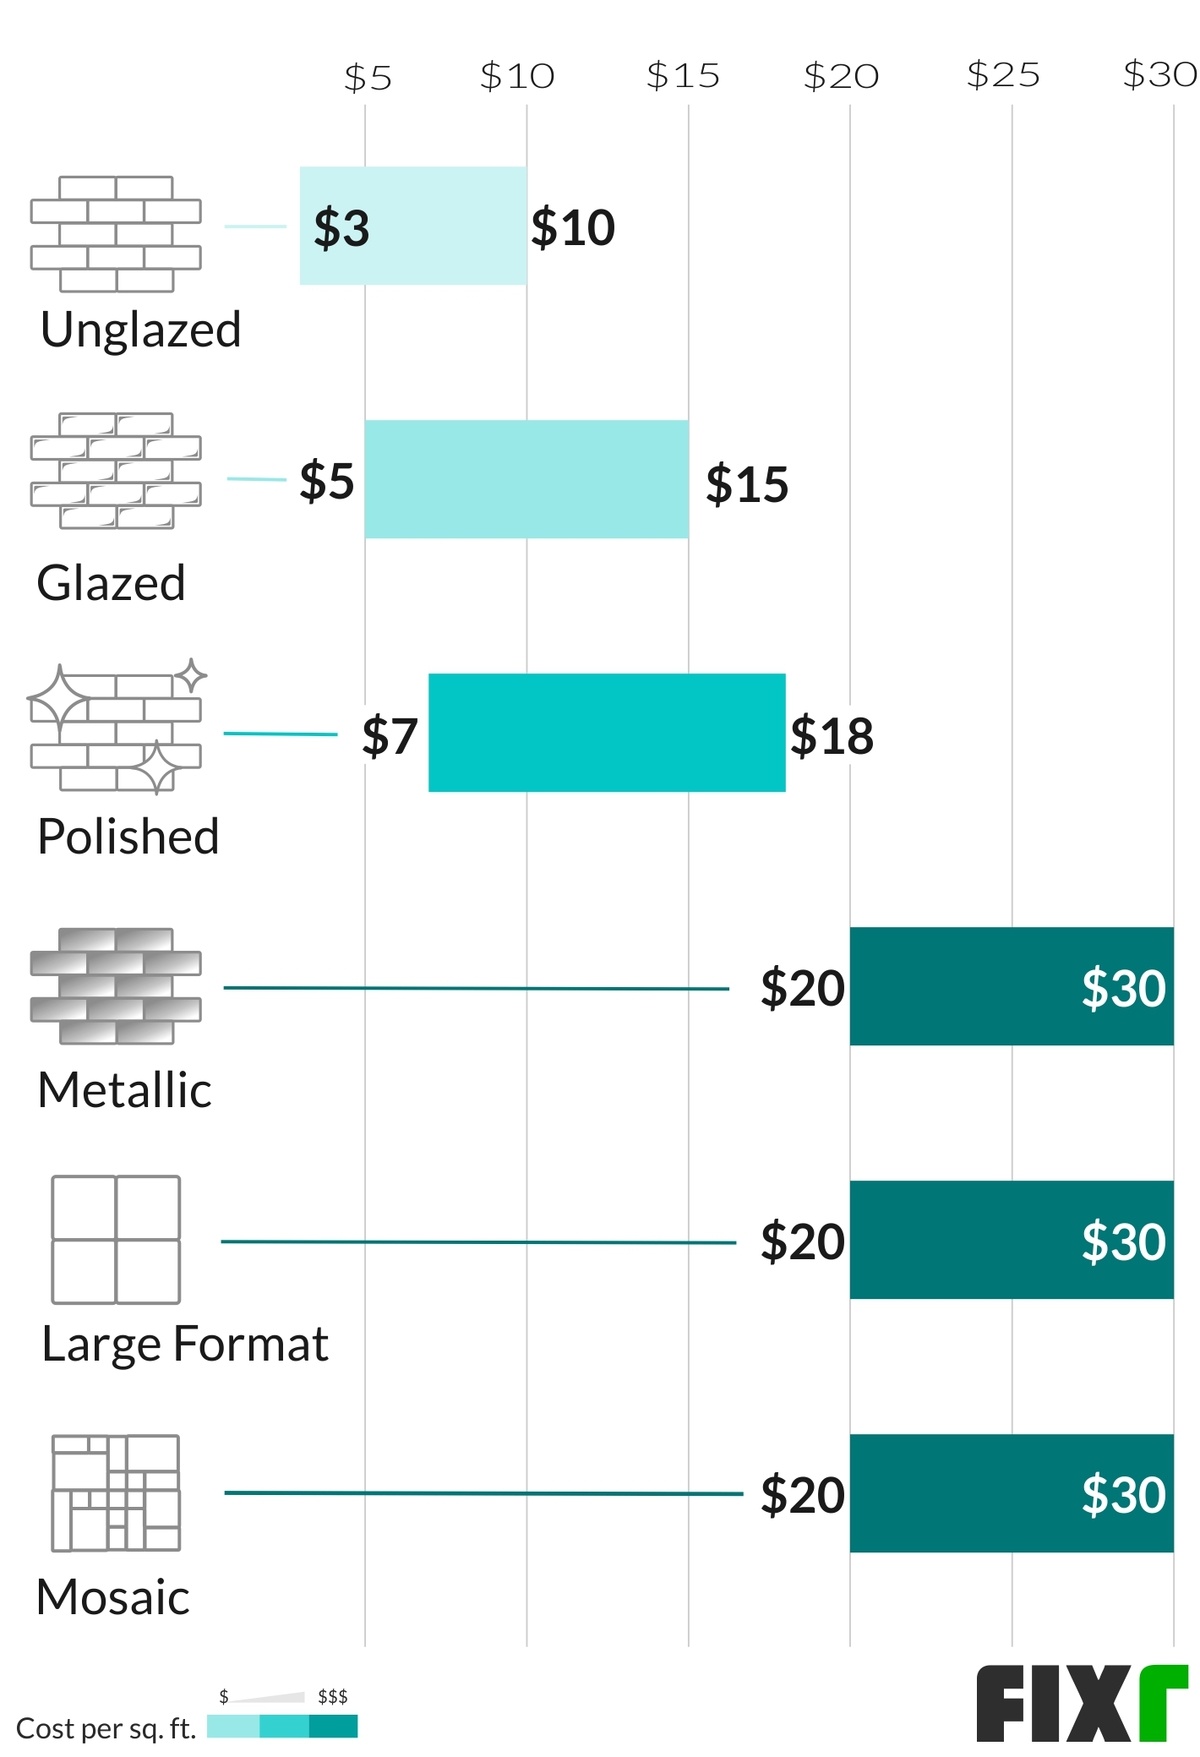 Porcelain Tile Backsplash Cost, How Much Do Contractors Charge To Install Tile Backsplash